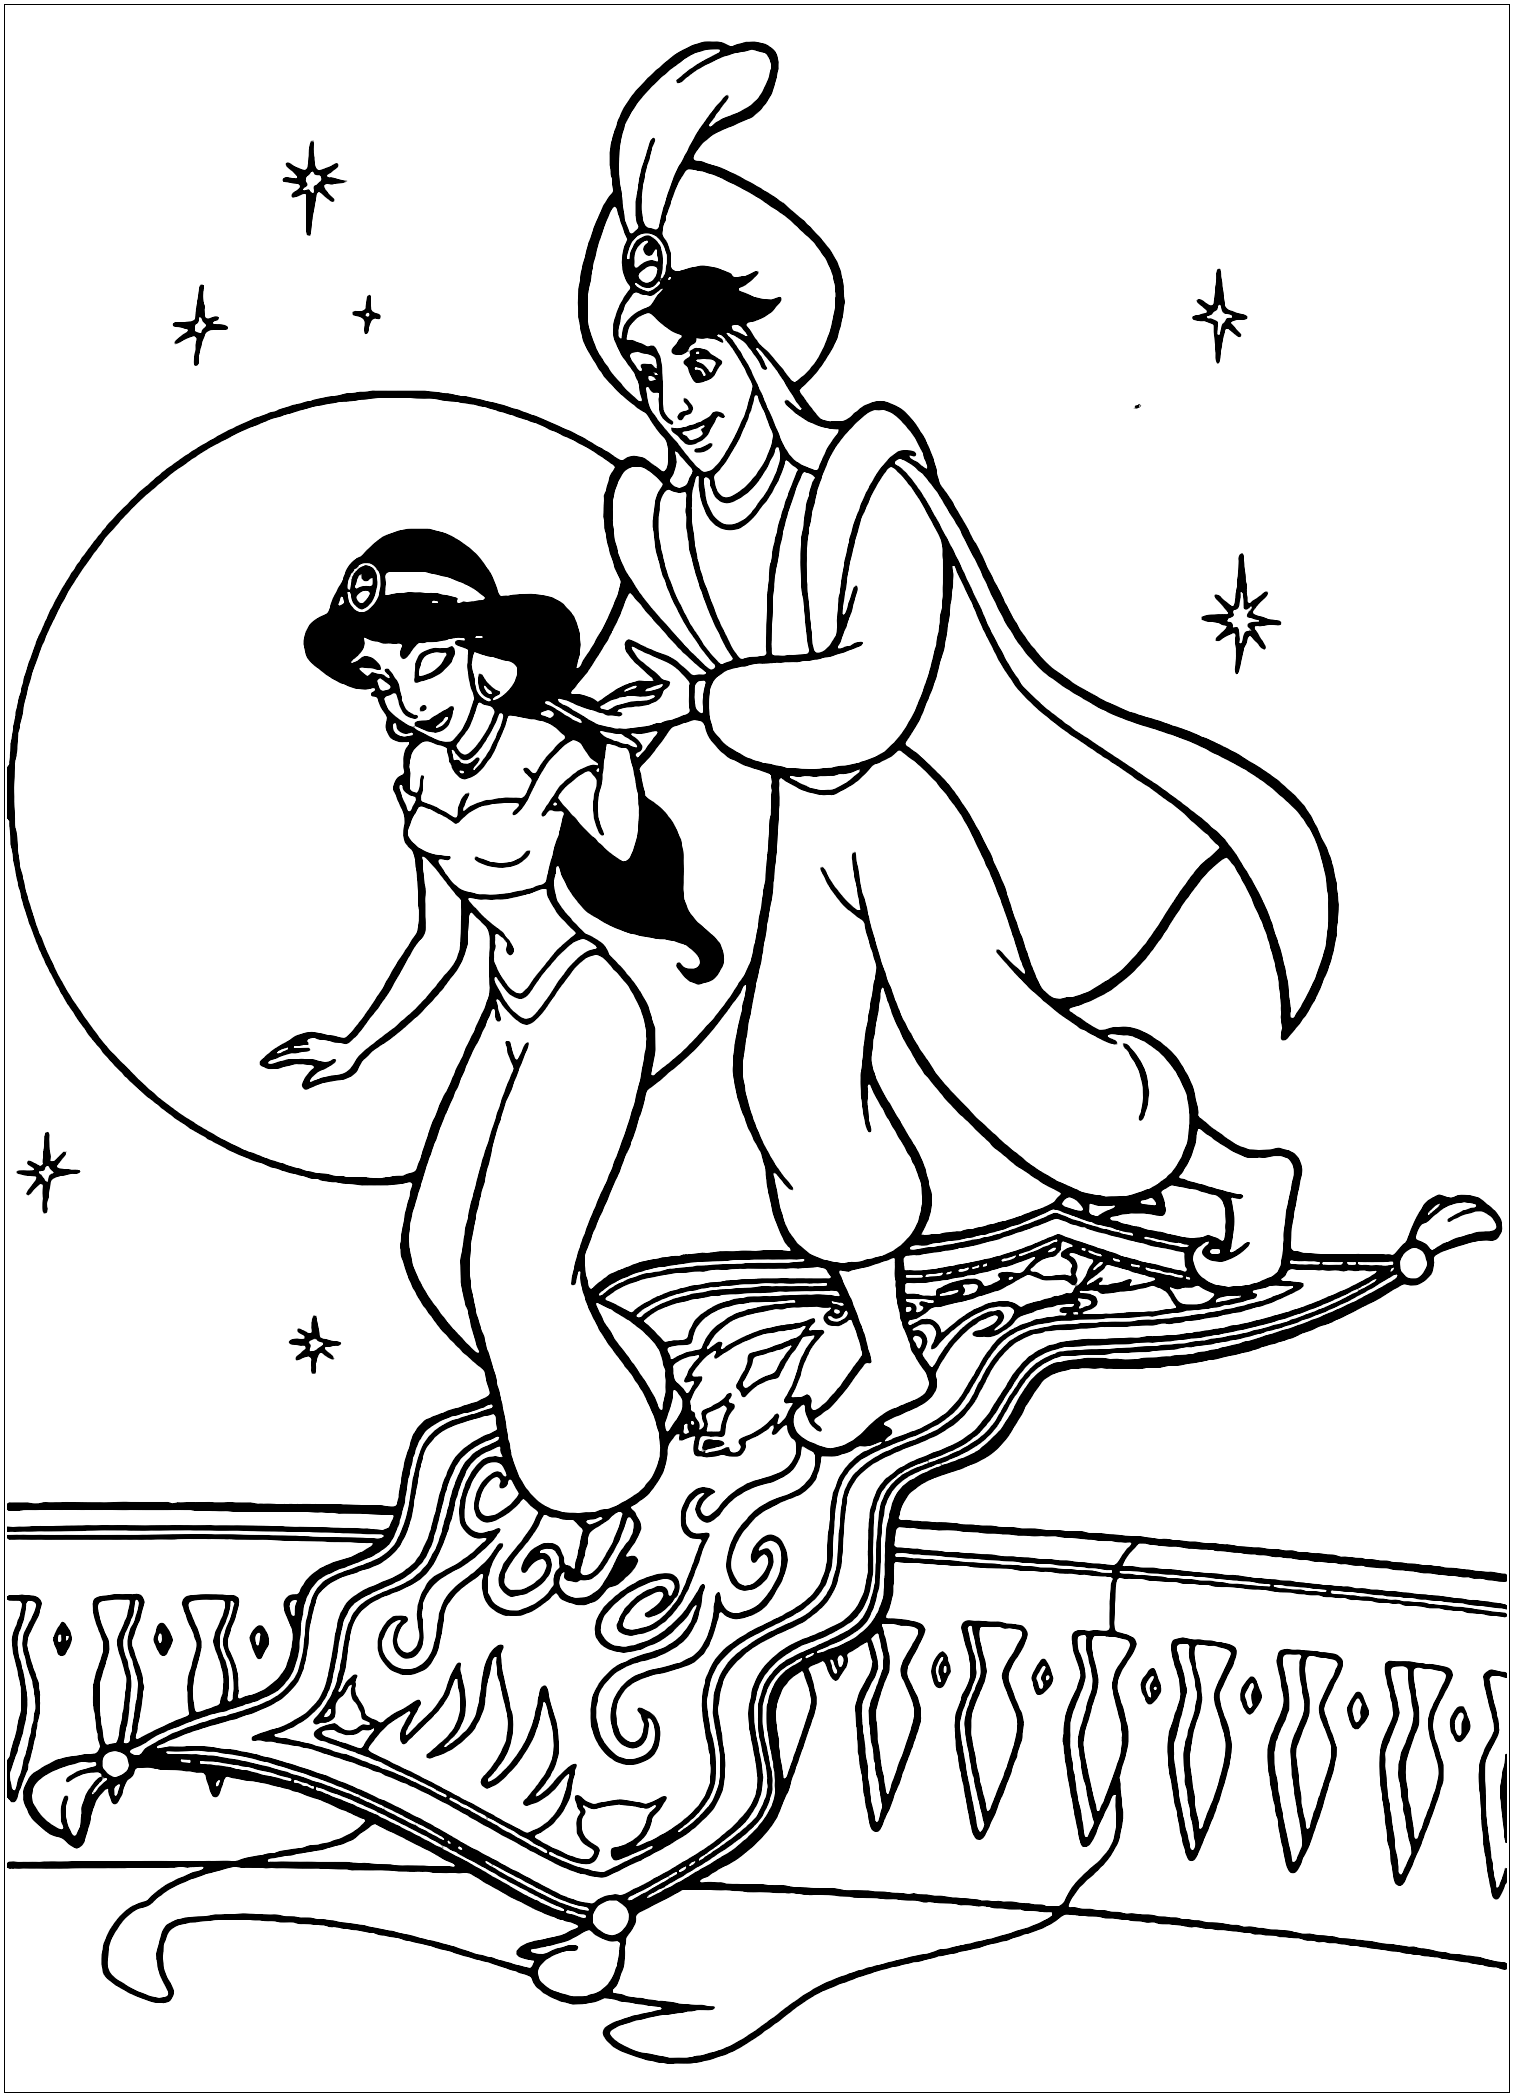 Aladdin e Jasmine regressam da sua viagem num tapete voador